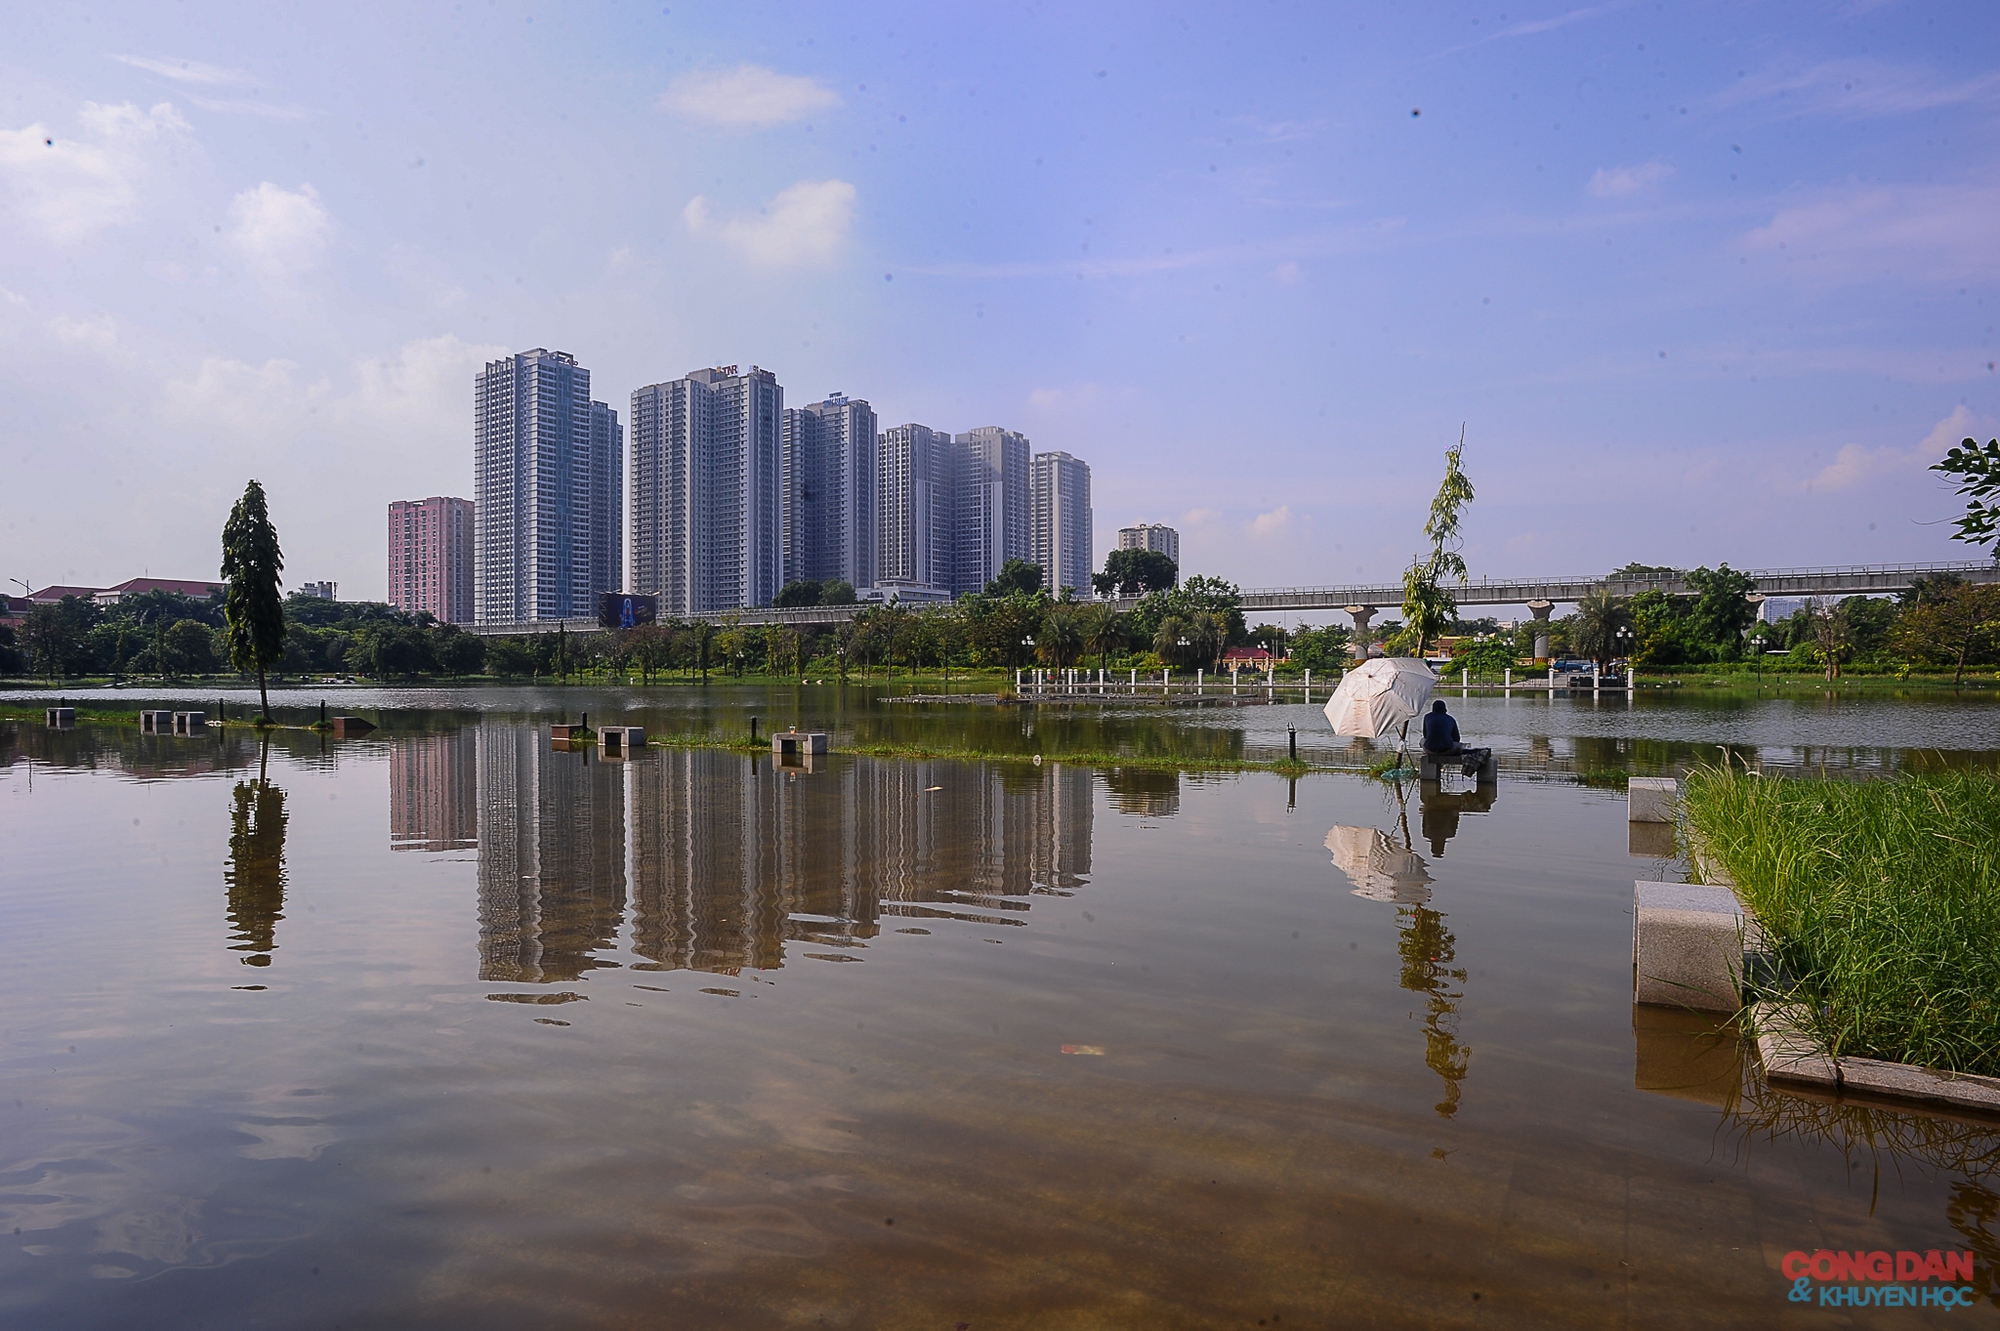 Hà Nội: Công viên 950 tỷ đồng ngập tràn nước và rác thải - Ảnh 1.